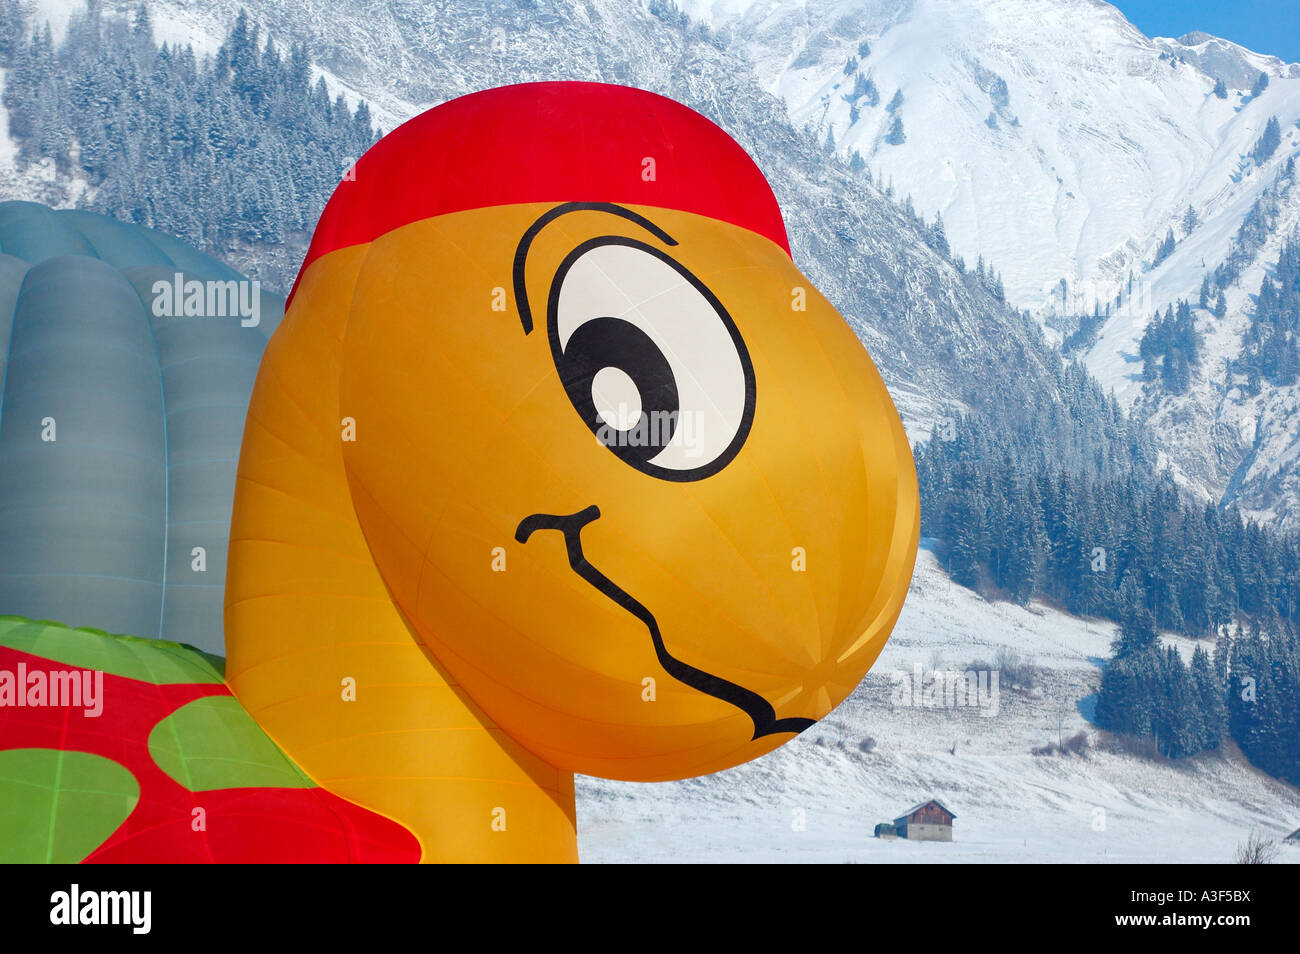 La tête d'une tortue (tortue) ou être un ballon gonflé au Chateau d'Oex montgolfières, Alpes enneigées en arrière-plan Banque D'Images